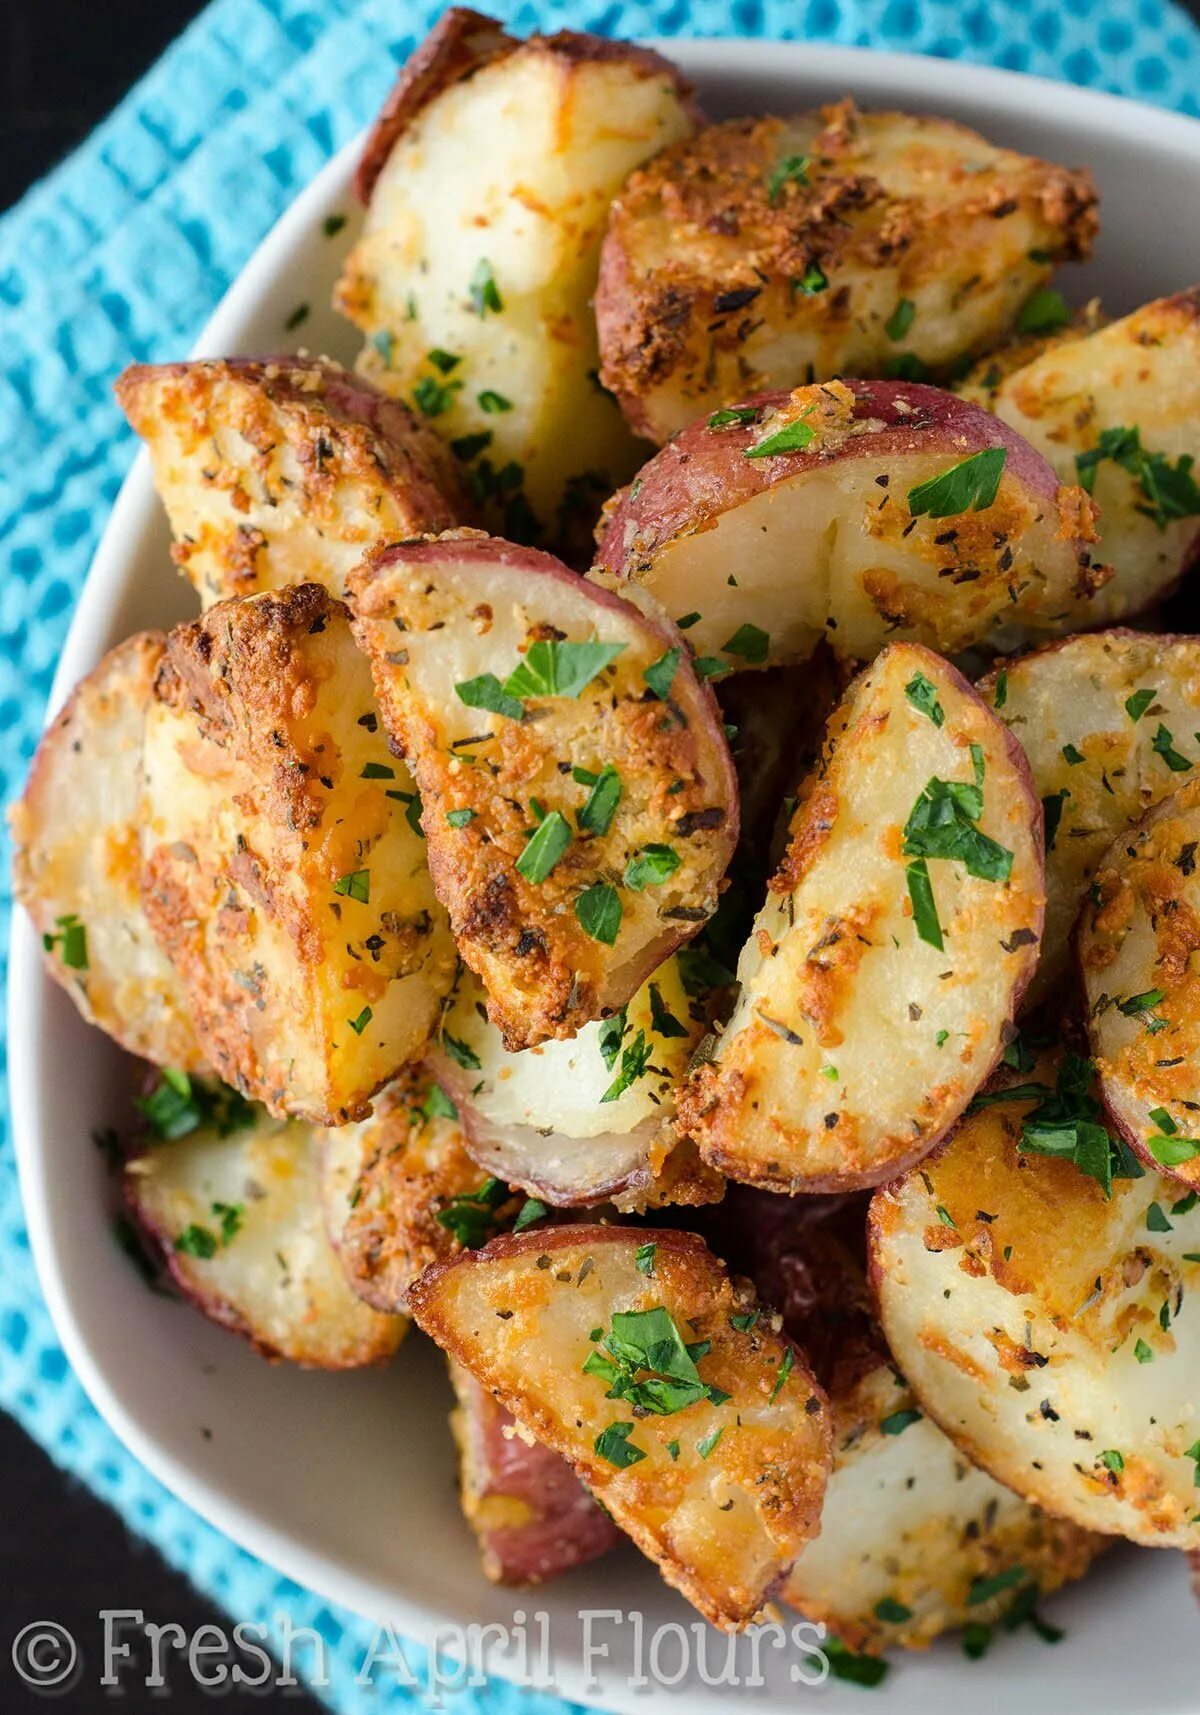 Блюда из картофеля простые рецепты. Запеченный картофель. Печеный картофель. Картошка в духовке. Вкуснейшая картошка в духовке.